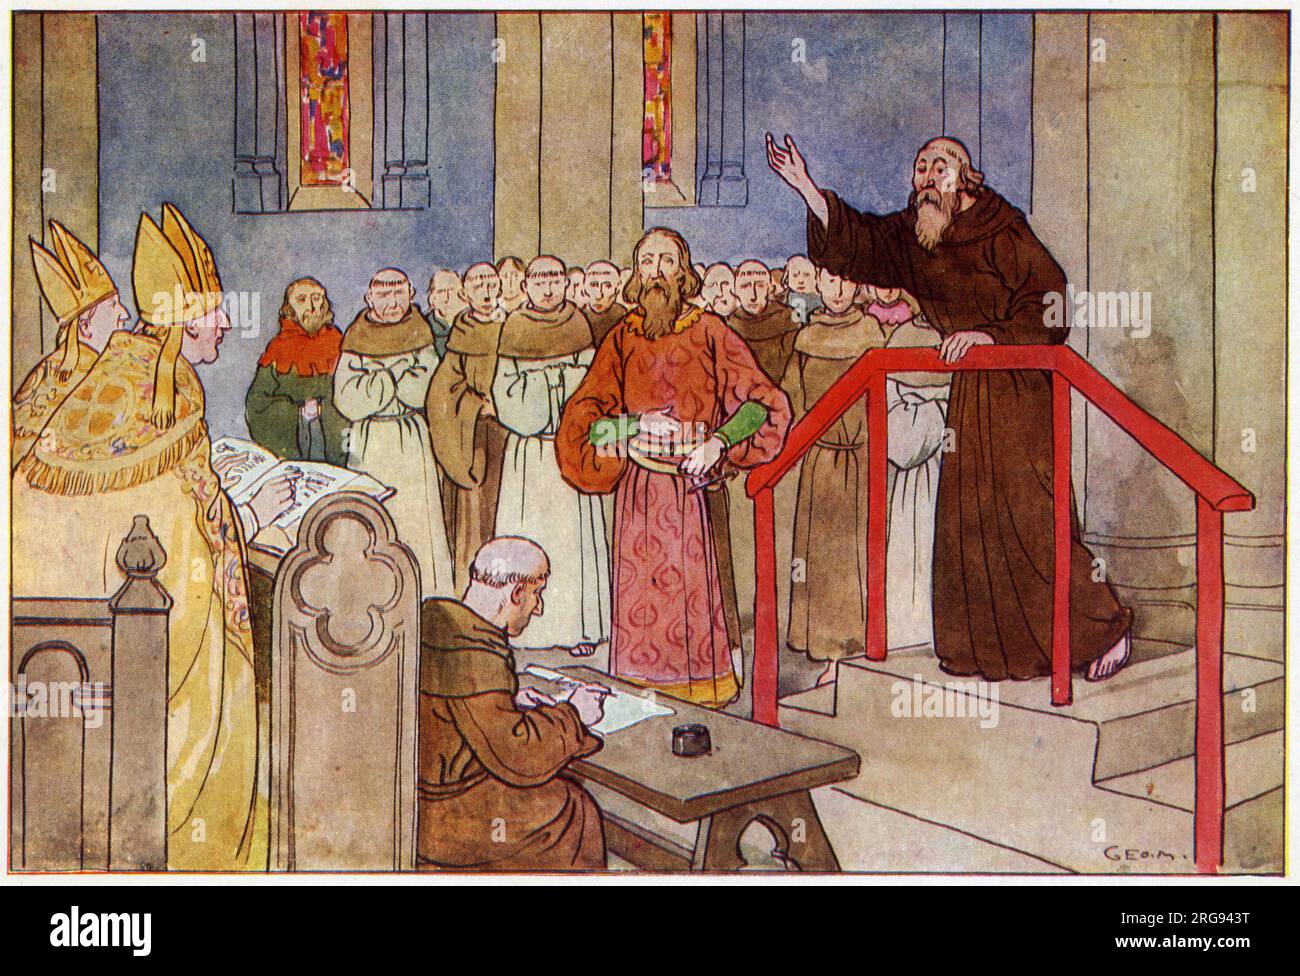 John Wycliffe (circa 1320s 1384) - filosofo scolastico inglese, teologo, traduttore biblico, riformatore, prete, e un professore di seminario all'Università di Oxford. Divenne un dissidente influente all'interno del sacerdozio cattolico durante il XIV secolo ed è considerato un importante predecessore del protestantesimo. Wycliffe attaccò lo status privilegiato del clero, che aveva rafforzato il loro potente ruolo in Inghilterra. Attaccò quindi il lusso e la sfarzosità delle parrocchie locali e le loro cerimonie. Il 17 novembre 1382, Wycliffe fu convocato davanti a un sinodo a Oxford, qui spiega Foto Stock